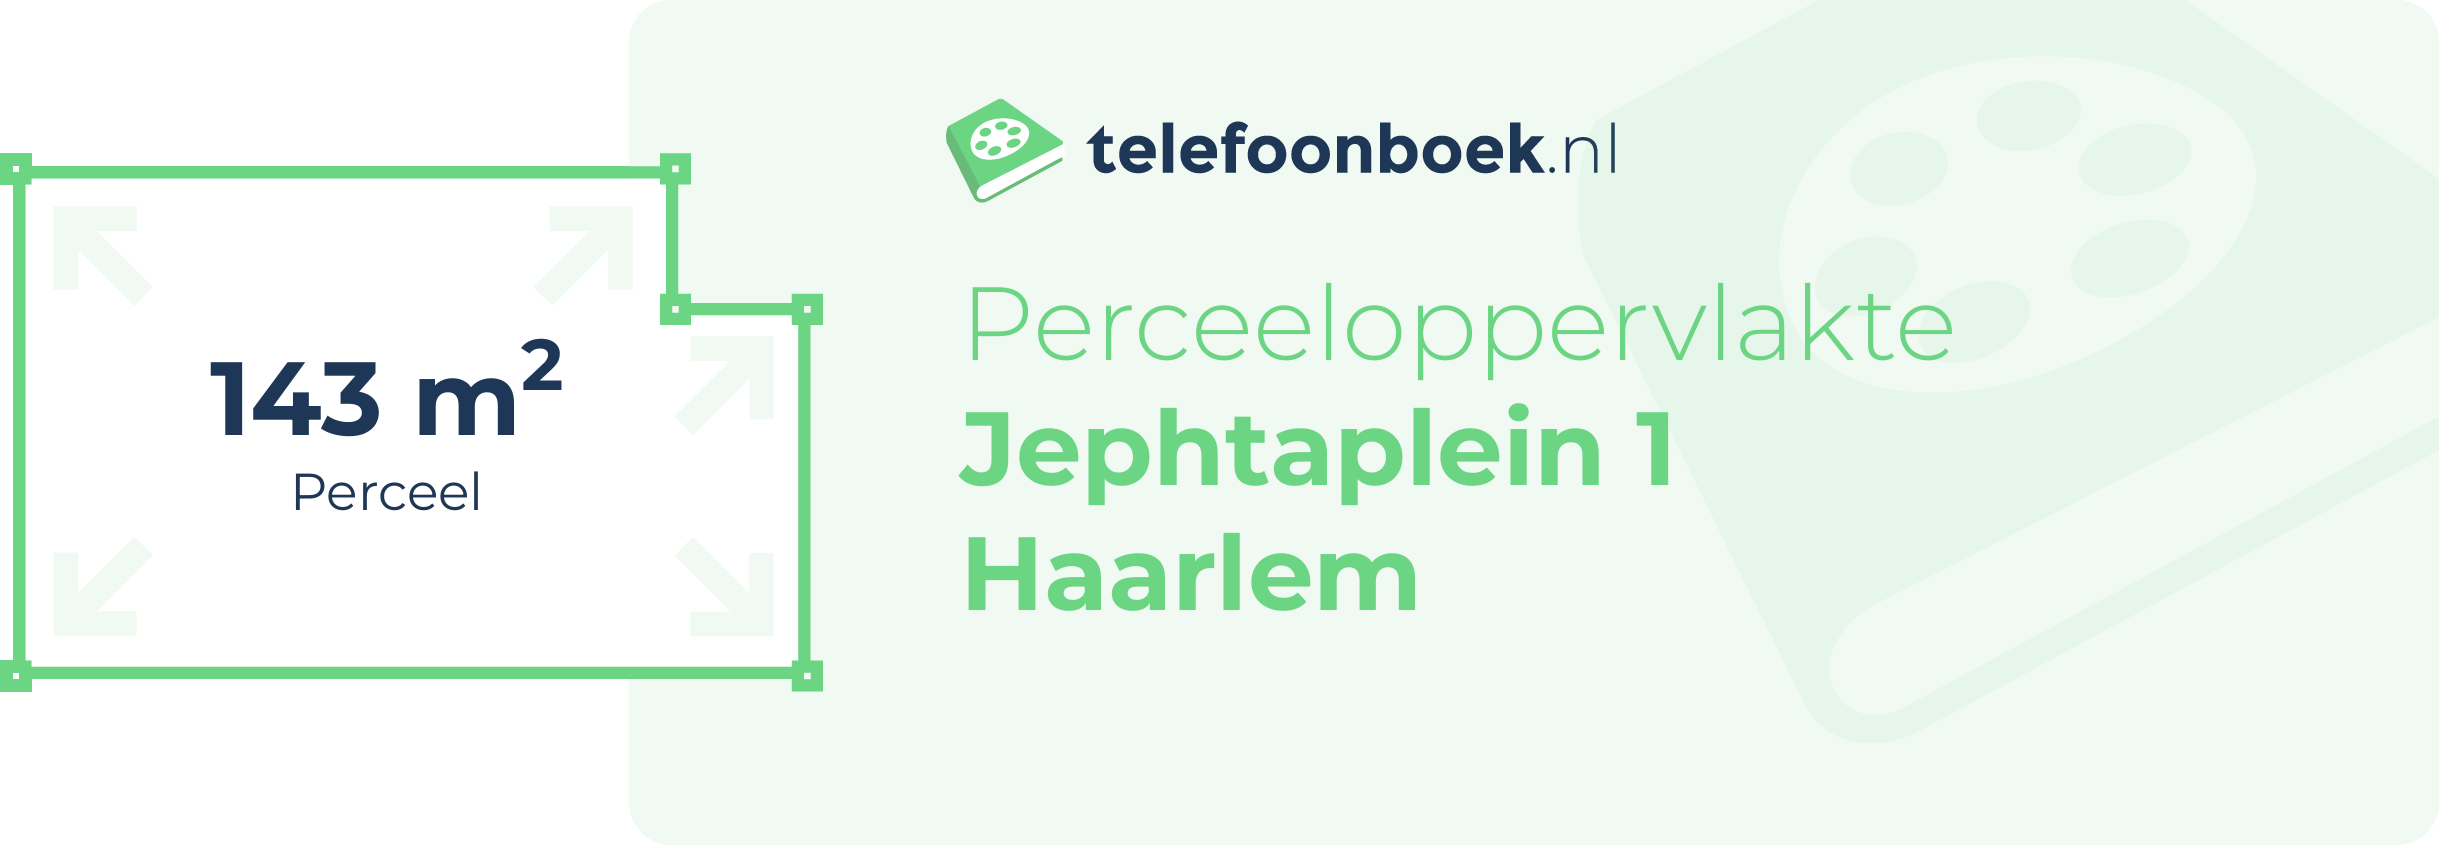 Perceeloppervlakte Jephtaplein 1 Haarlem